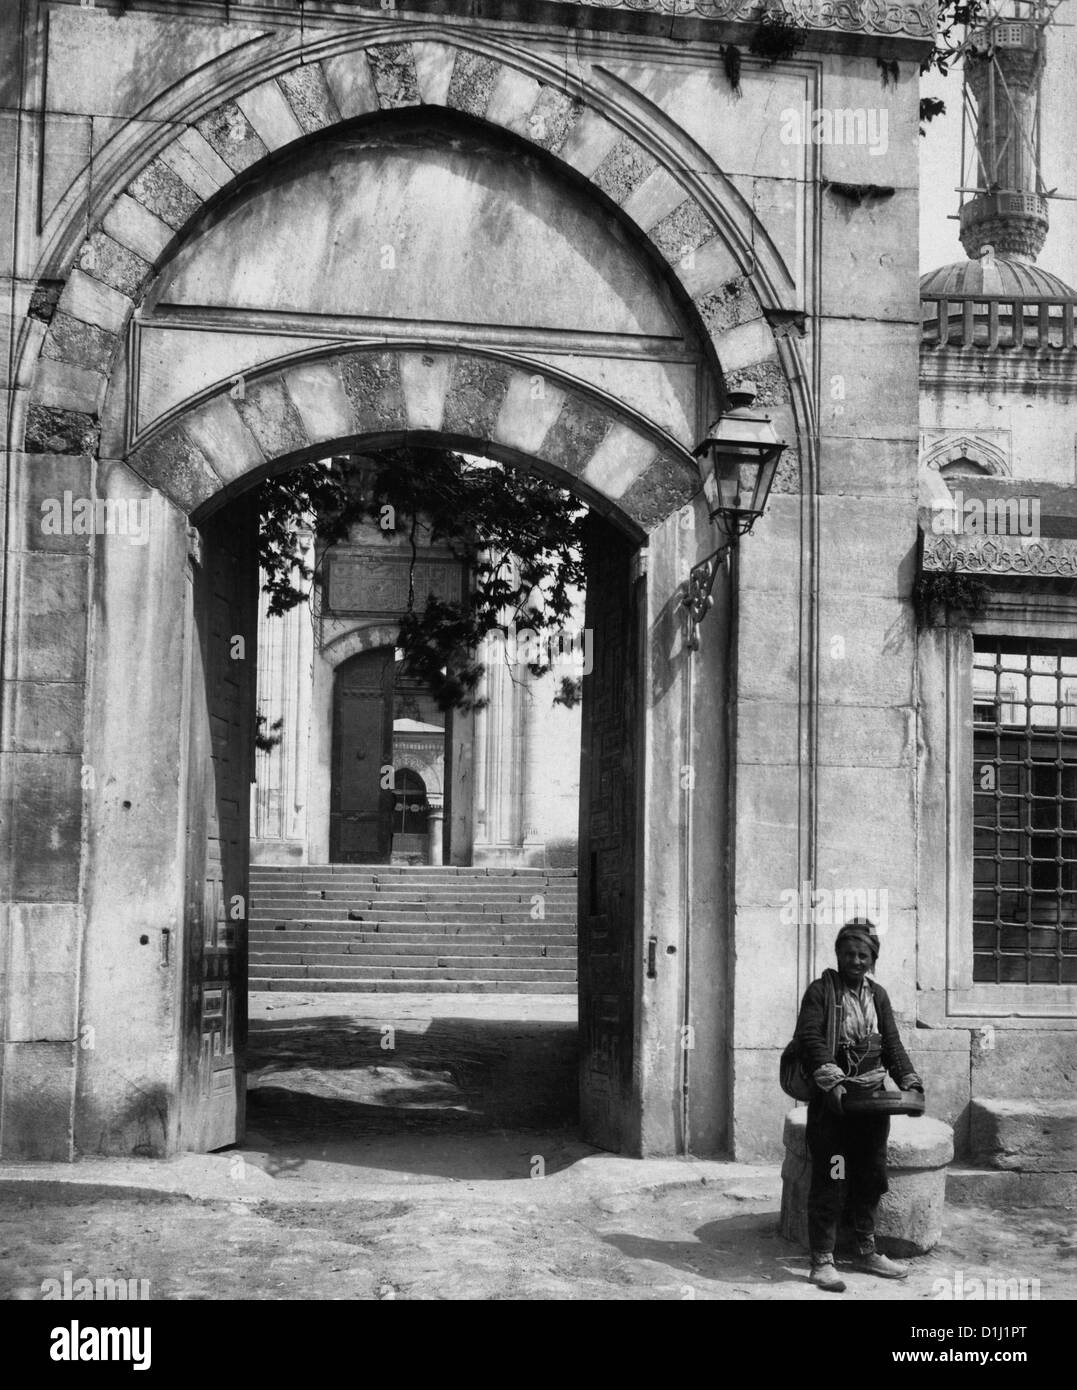 Entrée de la Mosquée Ahmed - uomo in piedi fuori dall'ingresso a Sultanahmet Camii - Istanbul, Turchia, circa 1900 Foto Stock